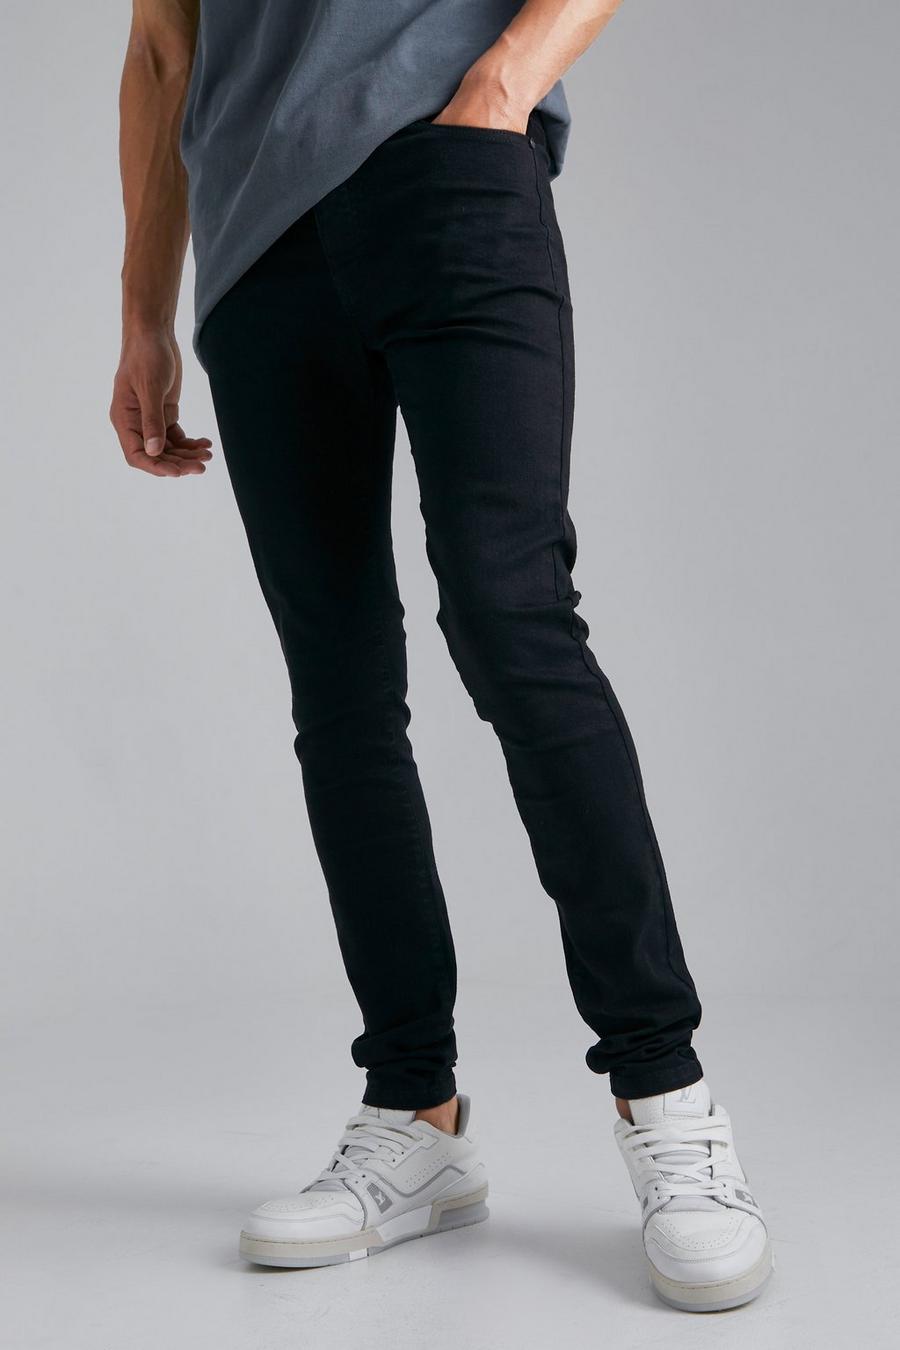 שחור אמיתי ג'ינס סקיני נמתח לגברים גבוהים